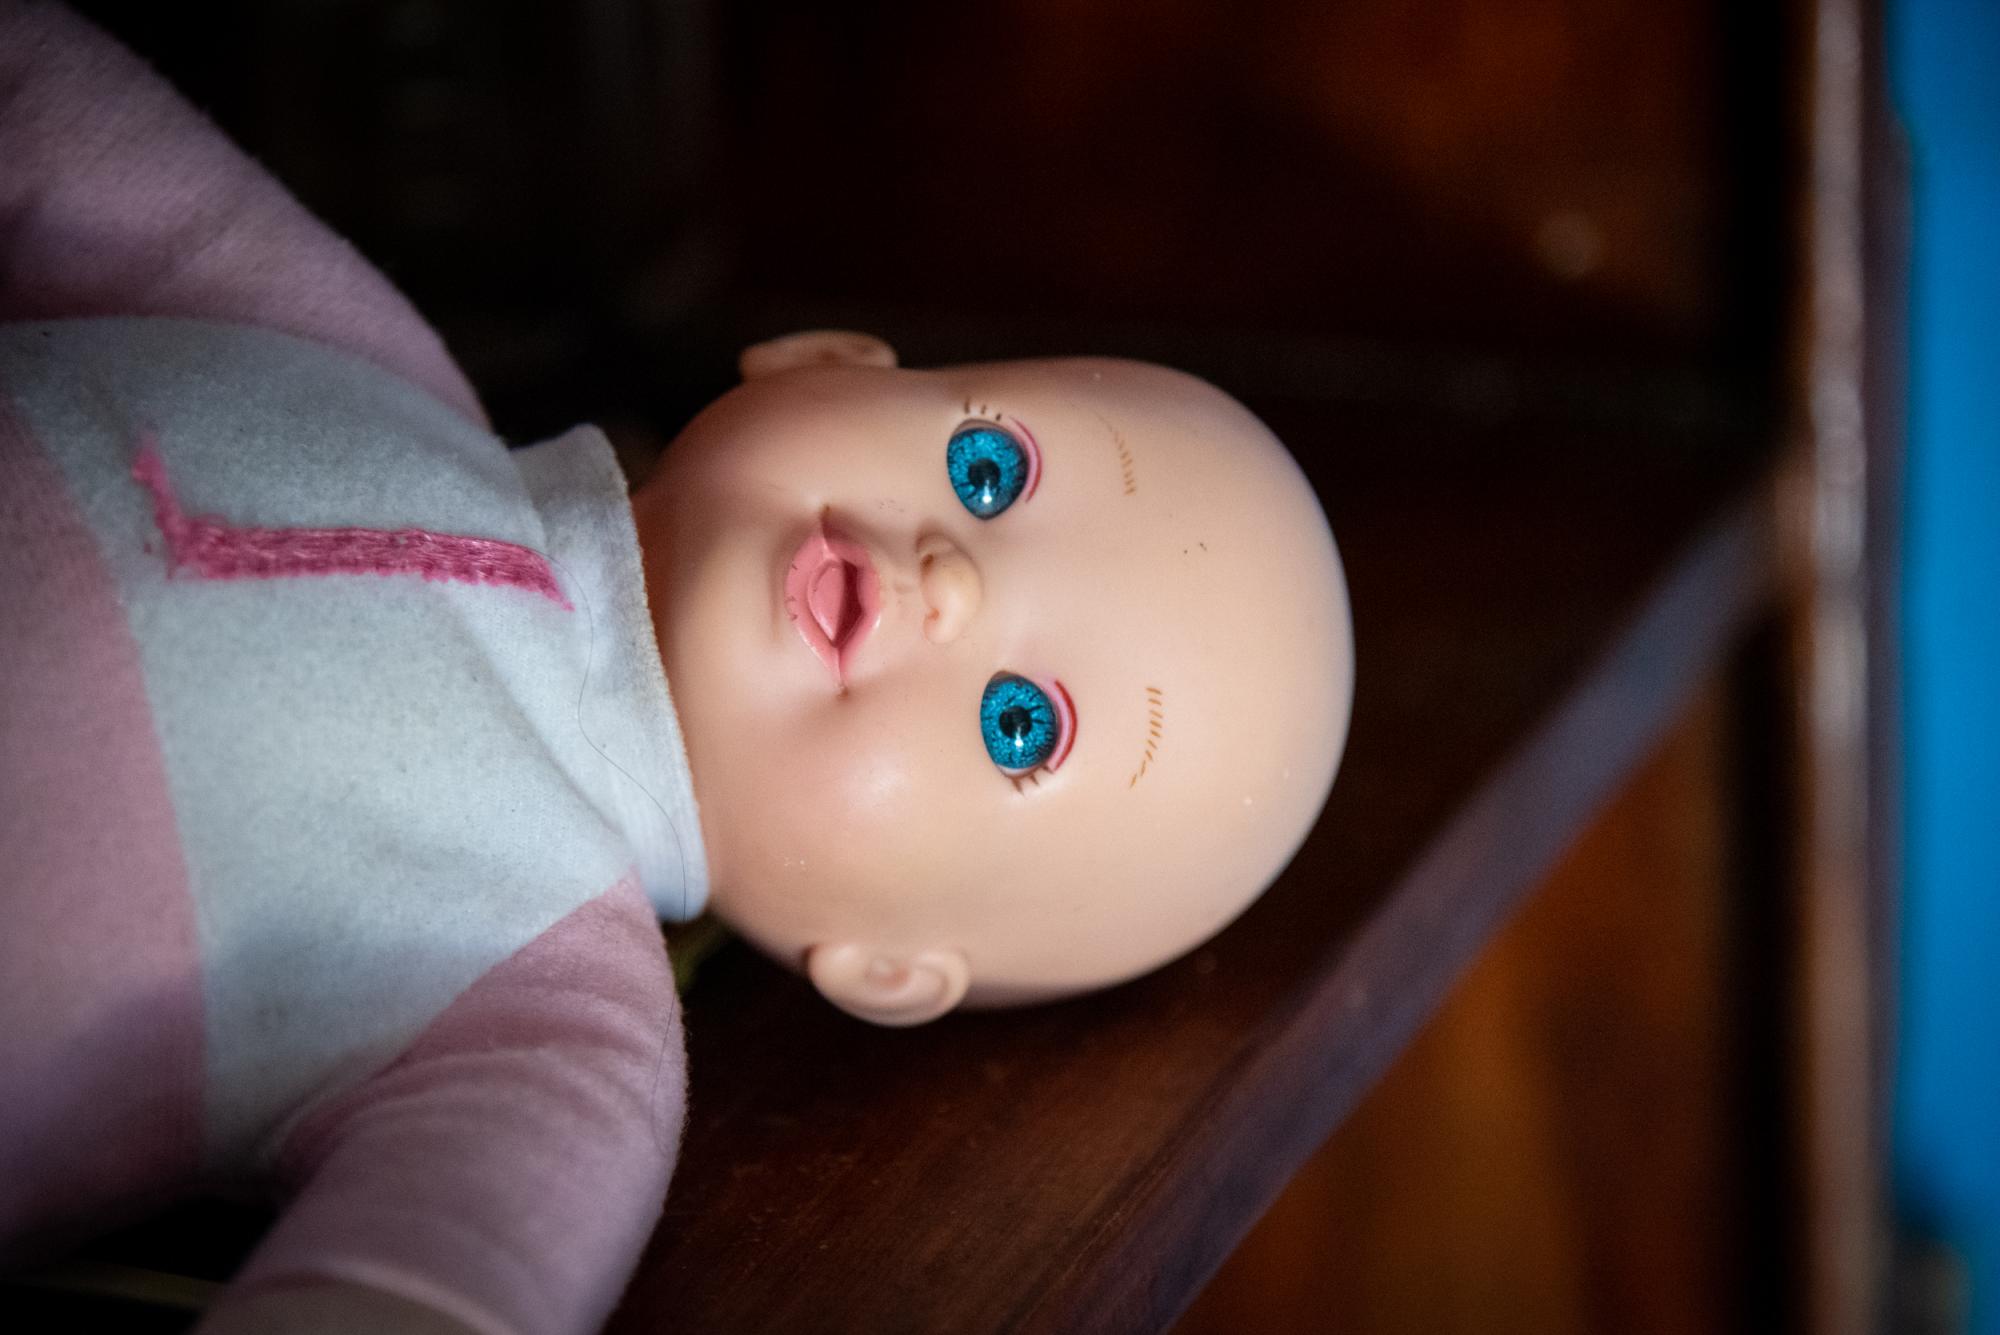 Esta muñeca es uno de los juguetes predilectos de la niña. (Juan Miguel Peña / Diario Libre)